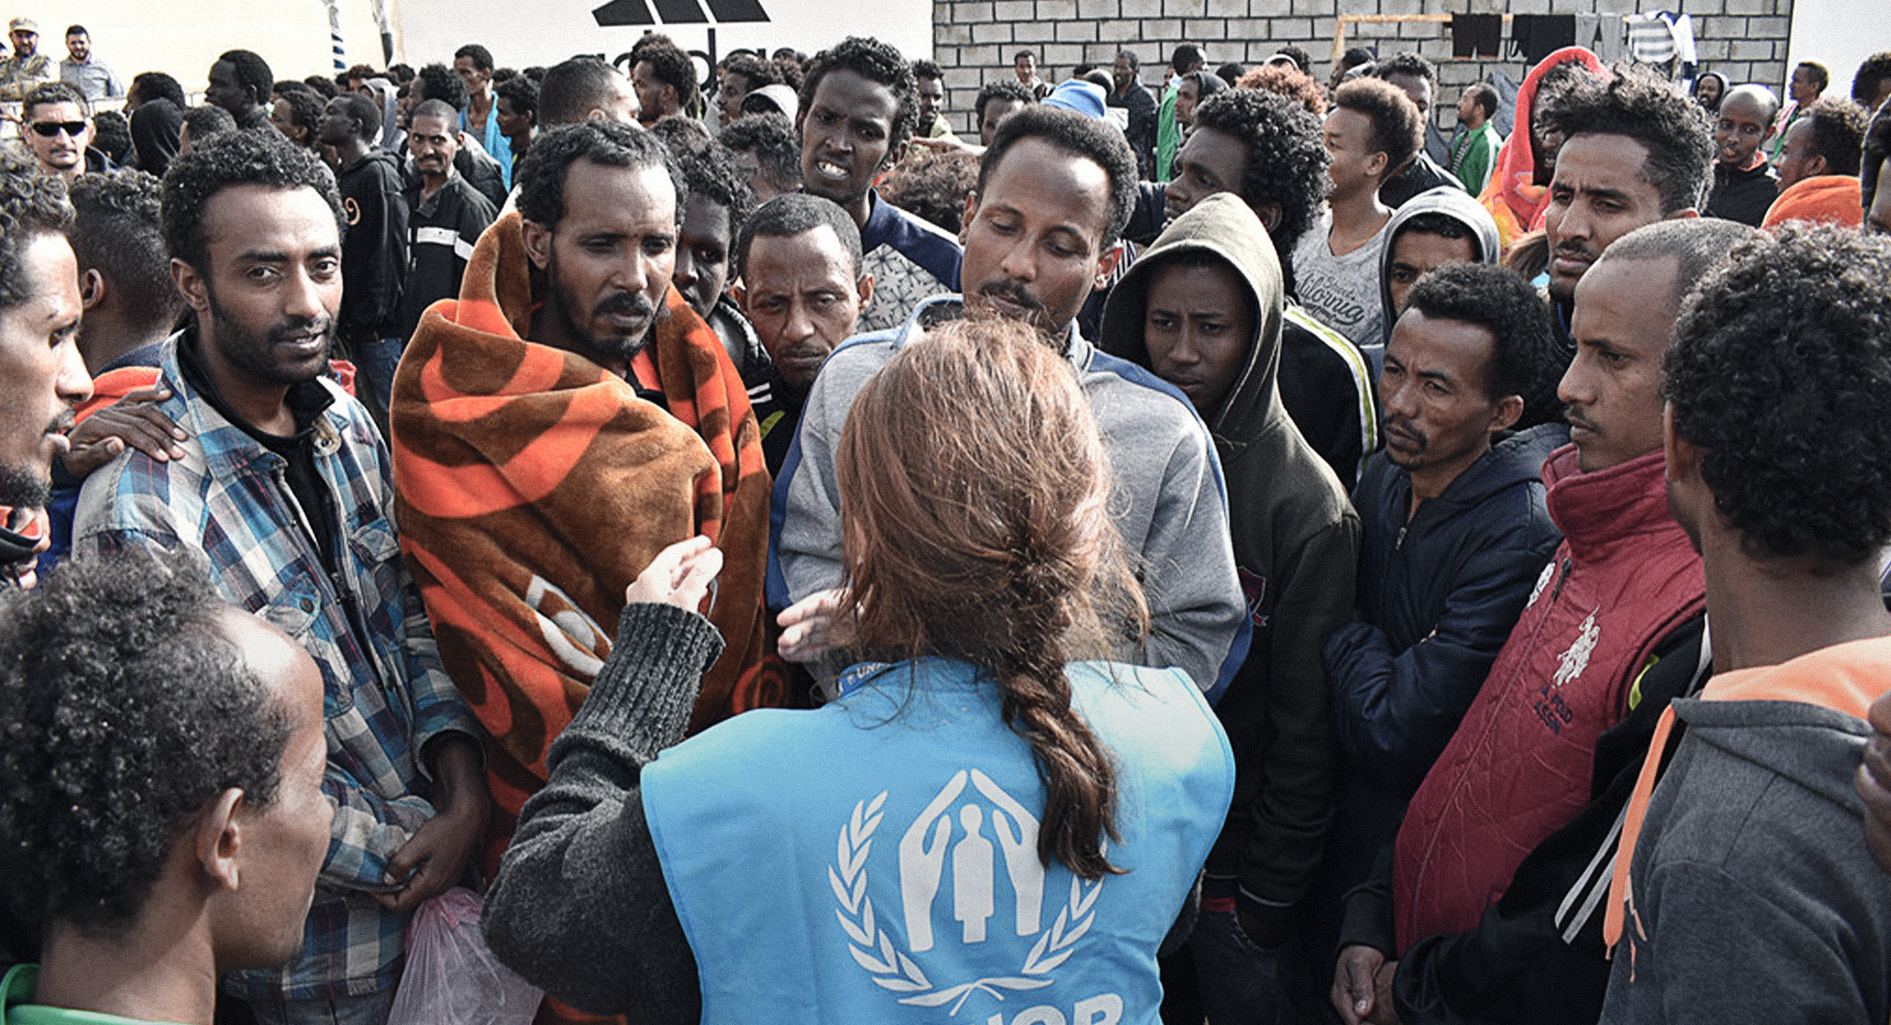 صورة الأمم المتحدة تجوِّع اللاجئين بمخيَّماتها في ليبيا لأنها لا تريد إعطاءهم سمكة بل دفعهم لتعلُّم الصيد في البحر الأبيض المتوسط